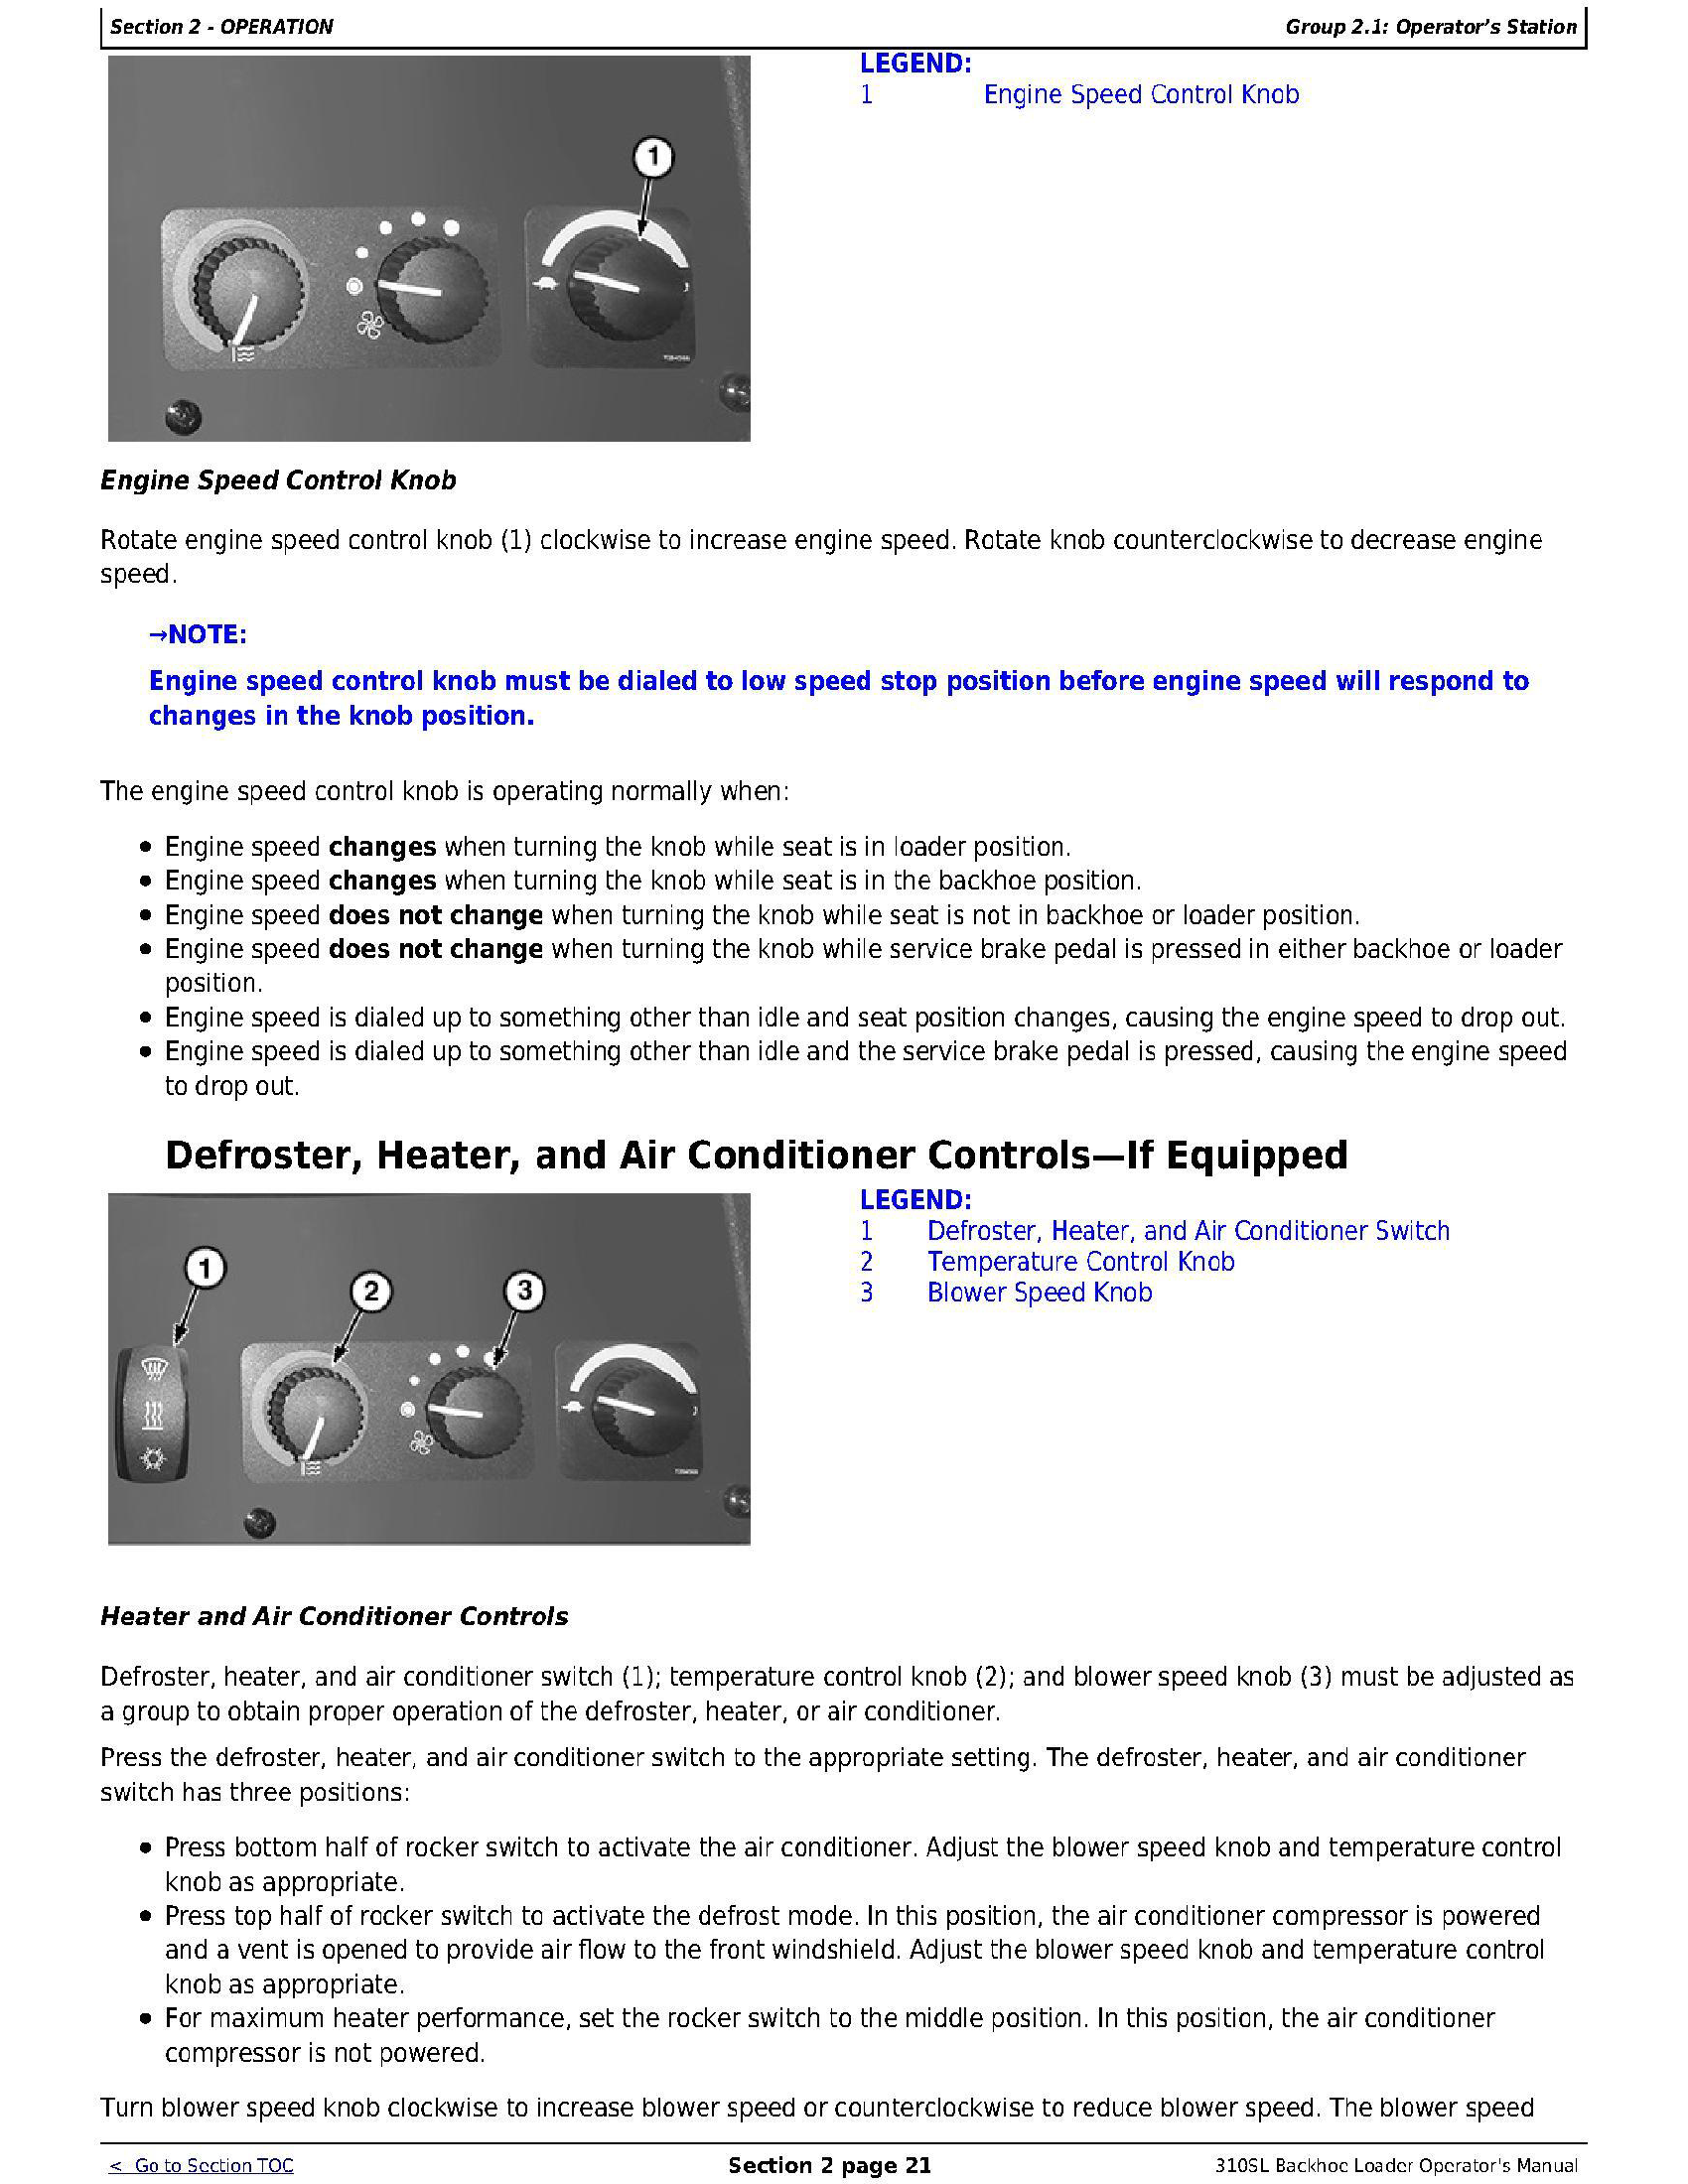 John Deere 1T0310SL__F273920 manual pdf